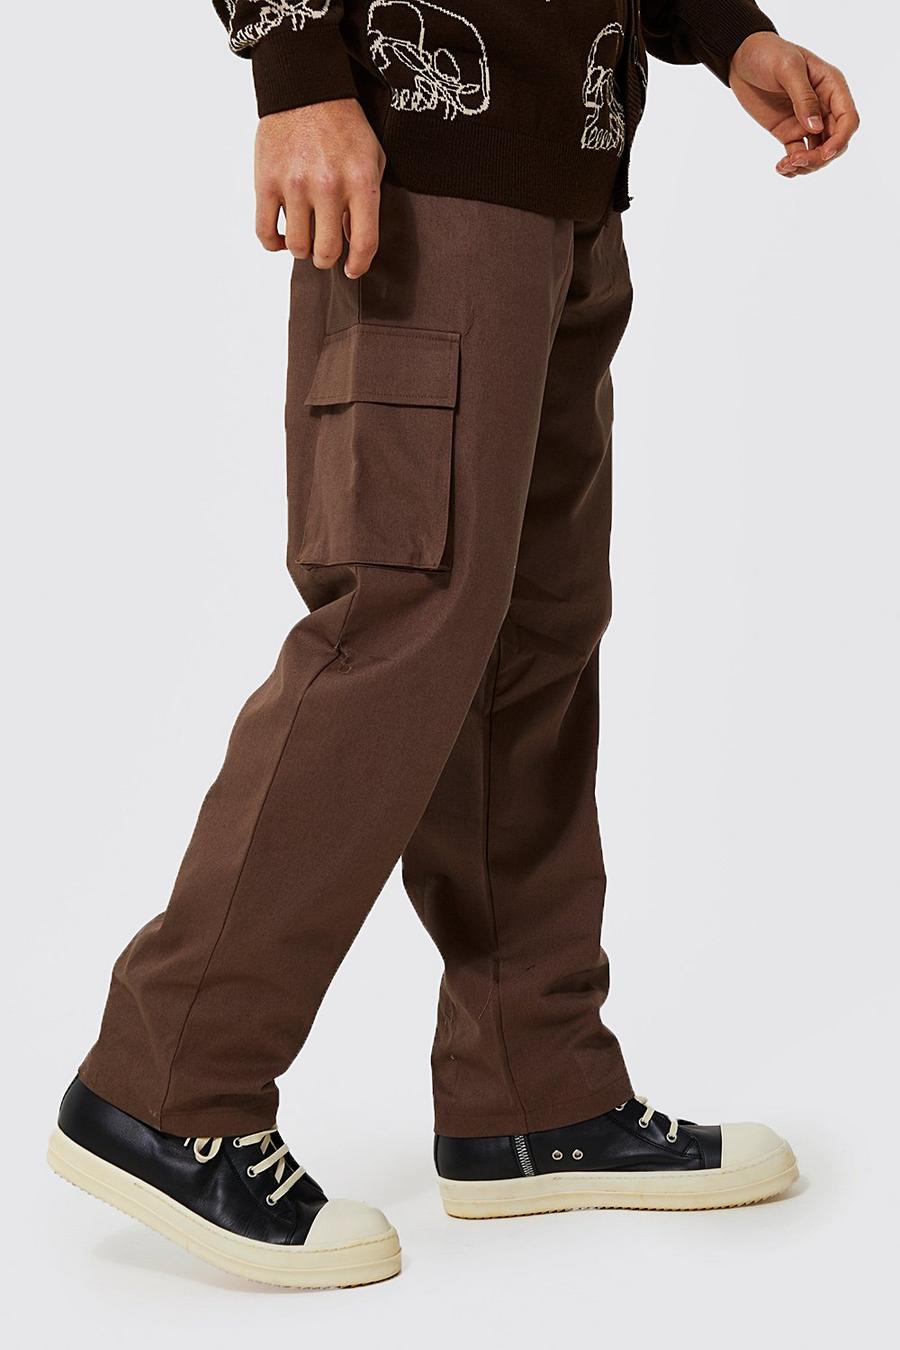 שוקולד marrone מכנסי צ'ינו בגזרה משוחררת בסגנון דגמ"ח  image number 1